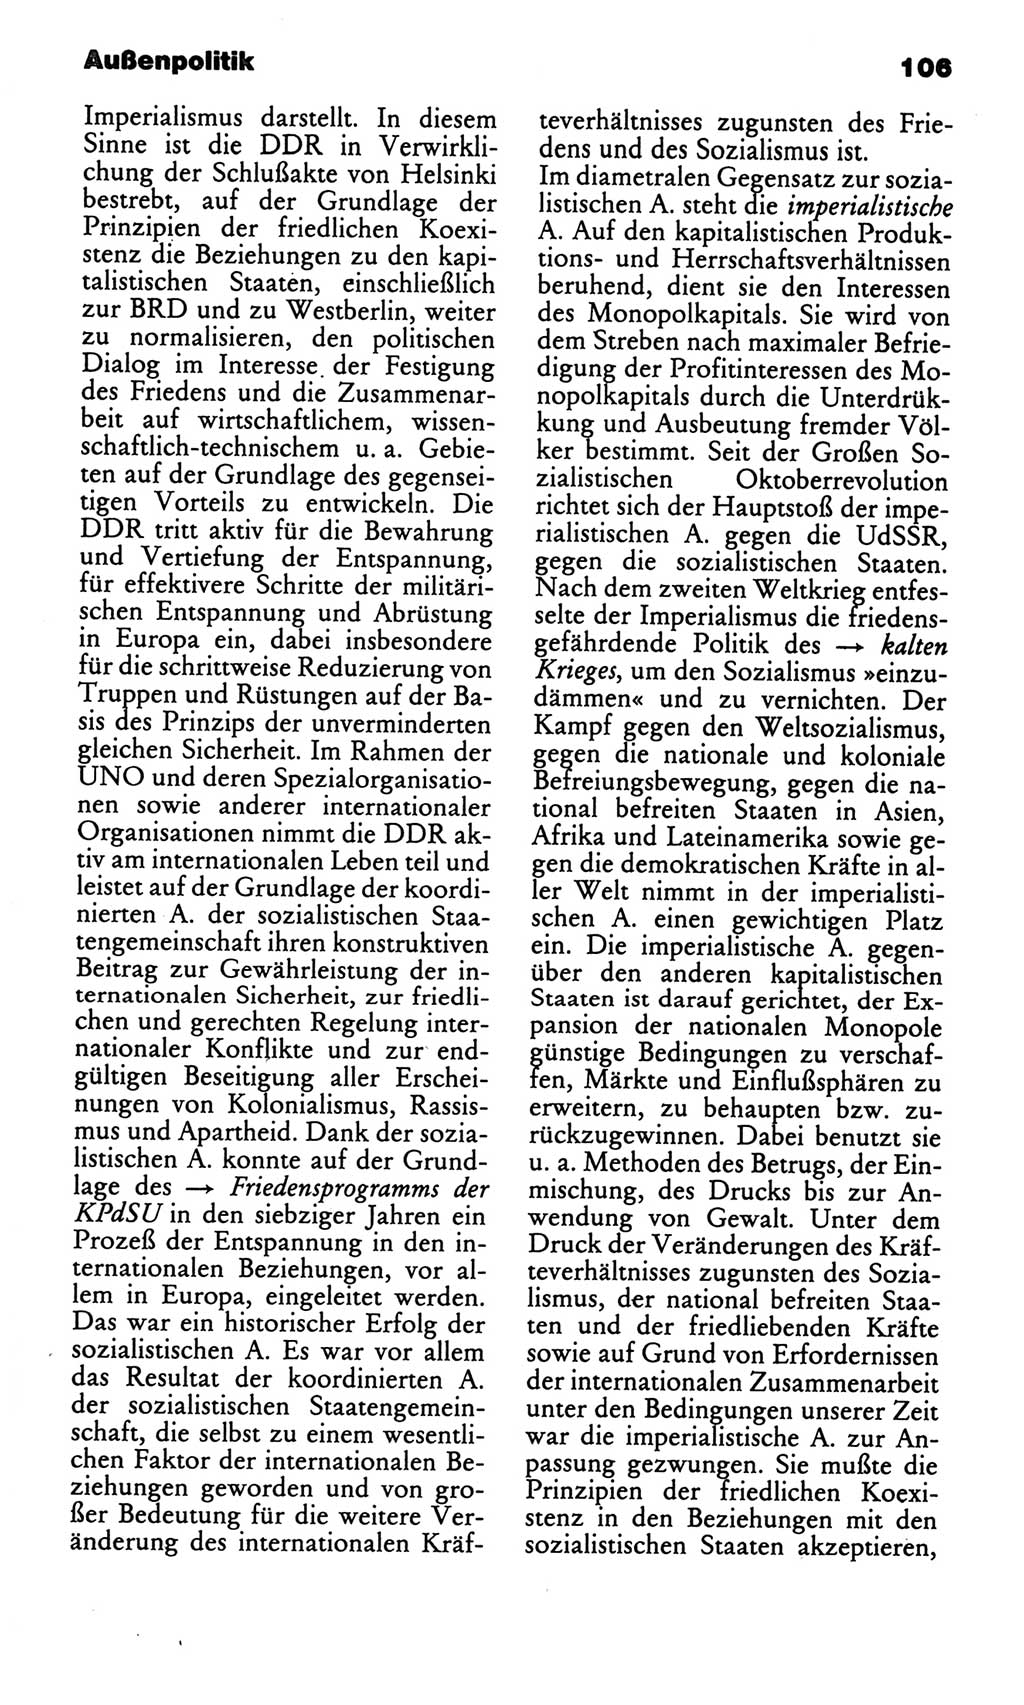 Kleines politisches Wörterbuch [Deutsche Demokratische Republik (DDR)] 1986, Seite 106 (Kl. pol. Wb. DDR 1986, S. 106)